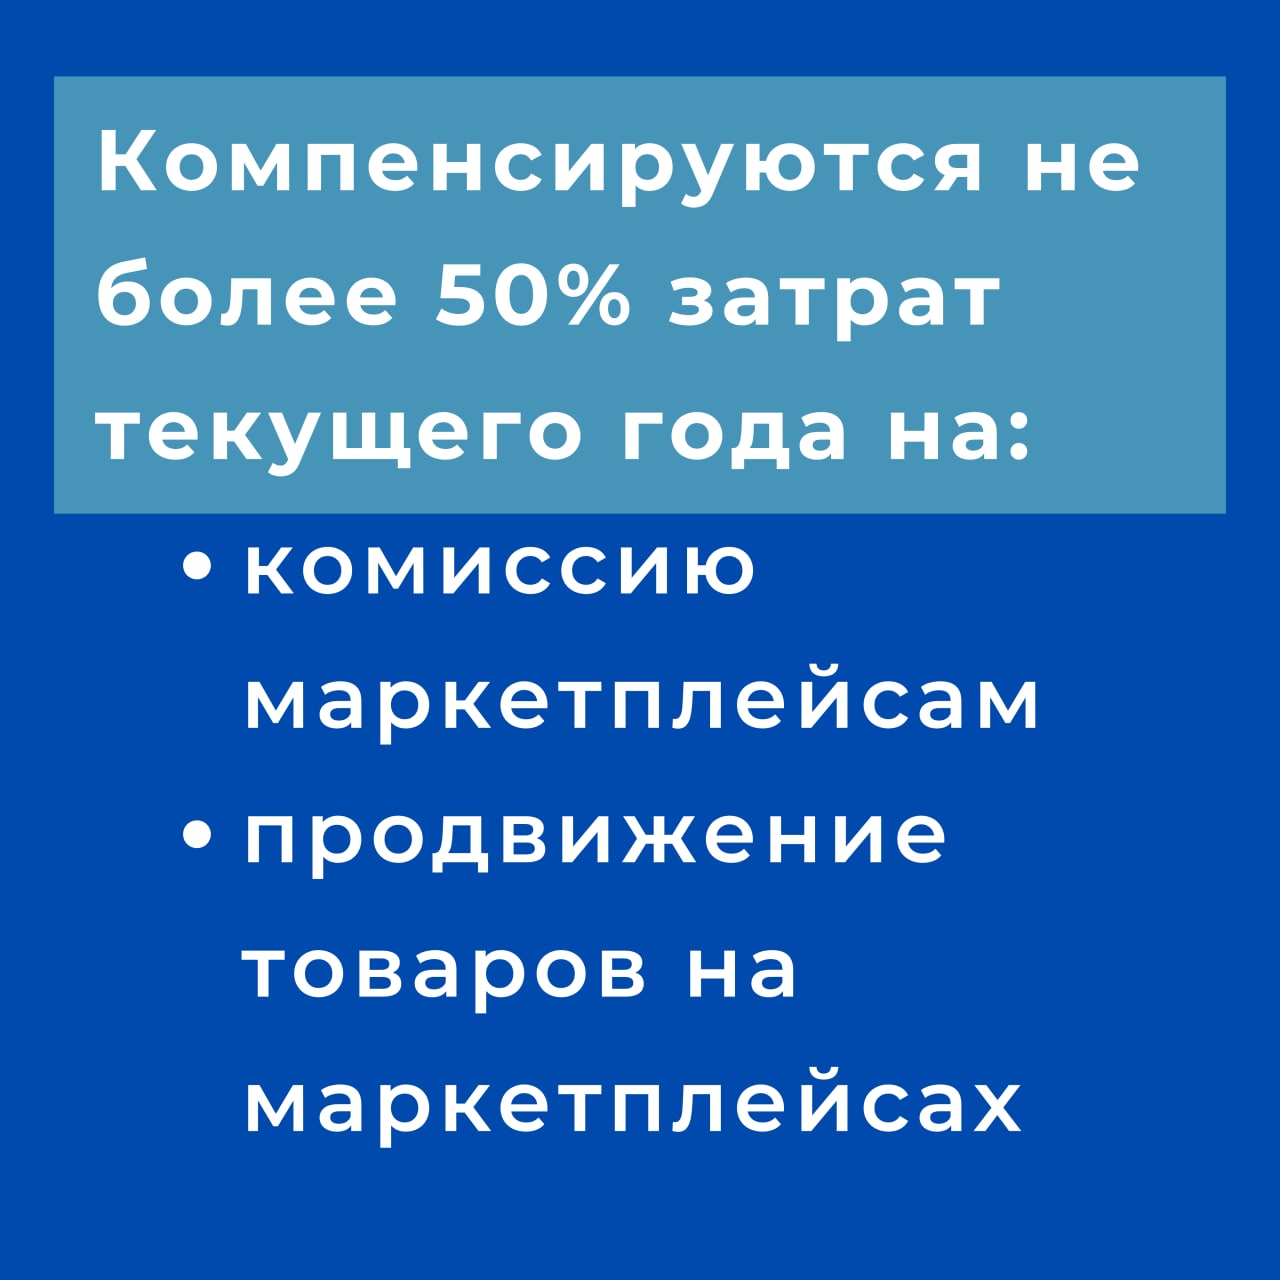 В Московской области продолжается прием заявок на получение субсидии на маркетплейсы